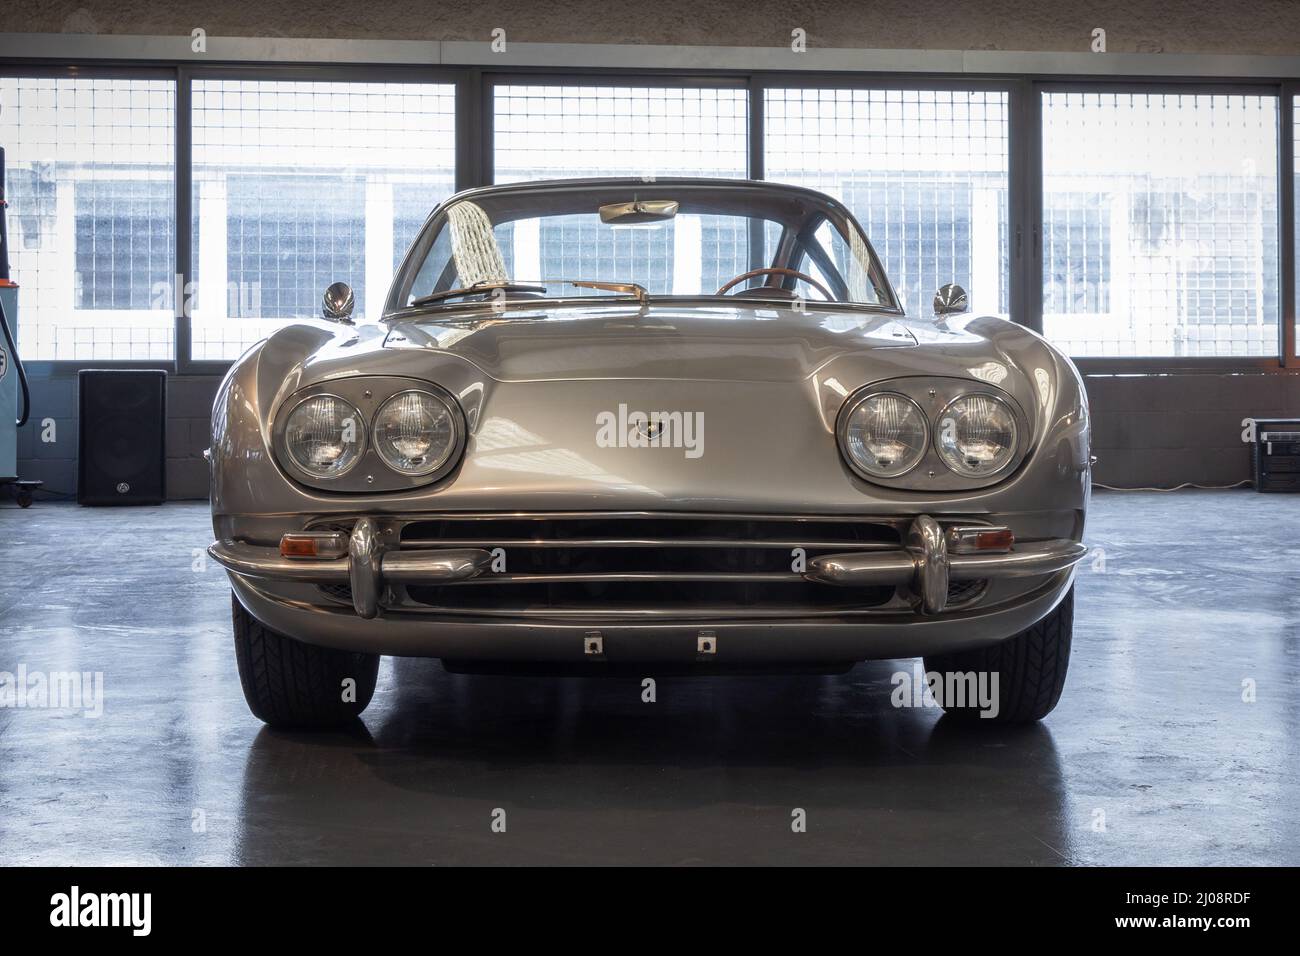 BARCELONE, ESPAGNE-25 MAI 2021: 1964 Lamborghini 350 GT (vue de face). Concepteur : Carrozzeria Touring Superleggera. Banque D'Images